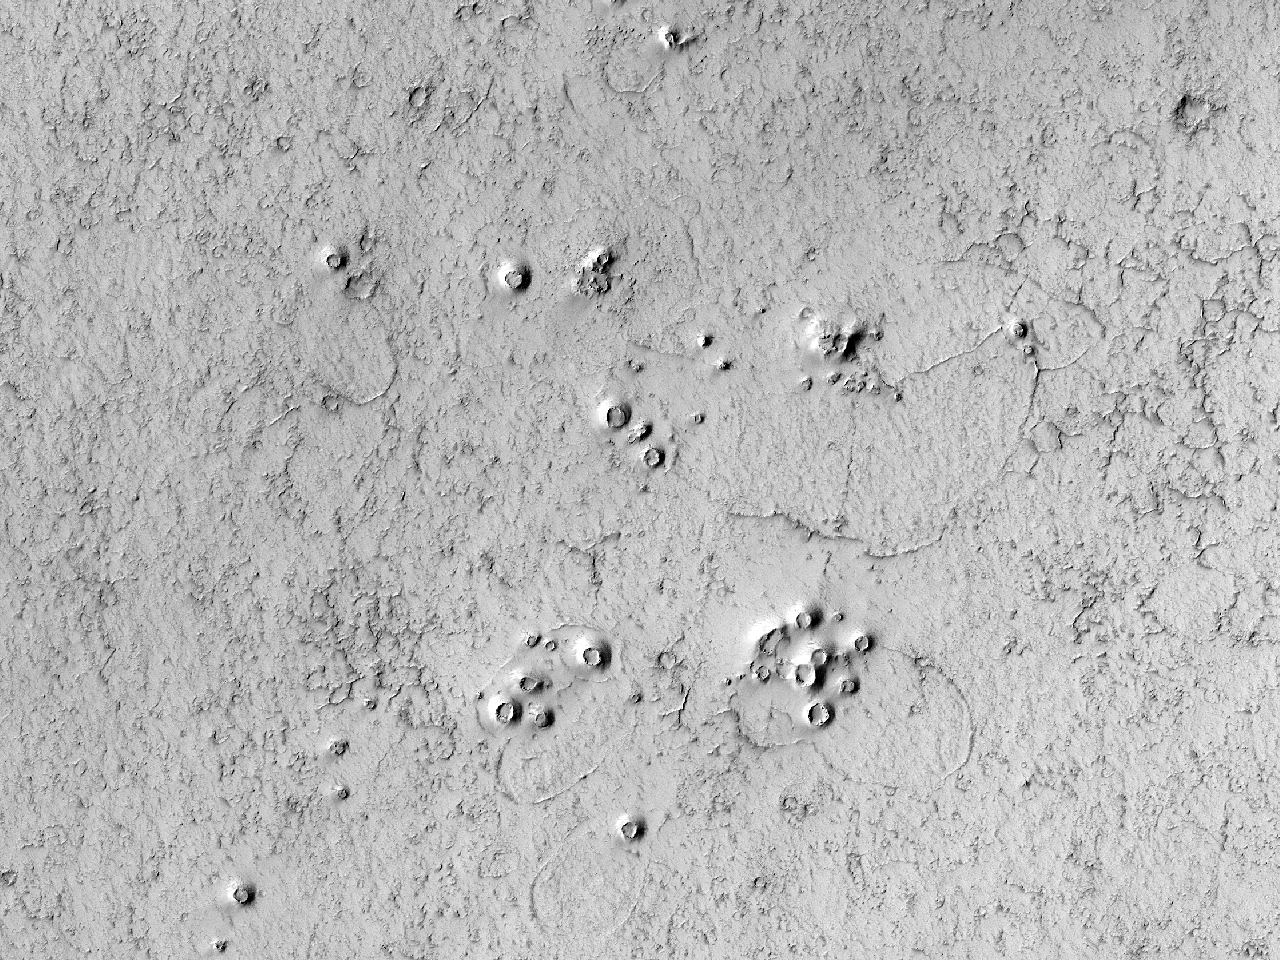 Grupo de crateras pequenas